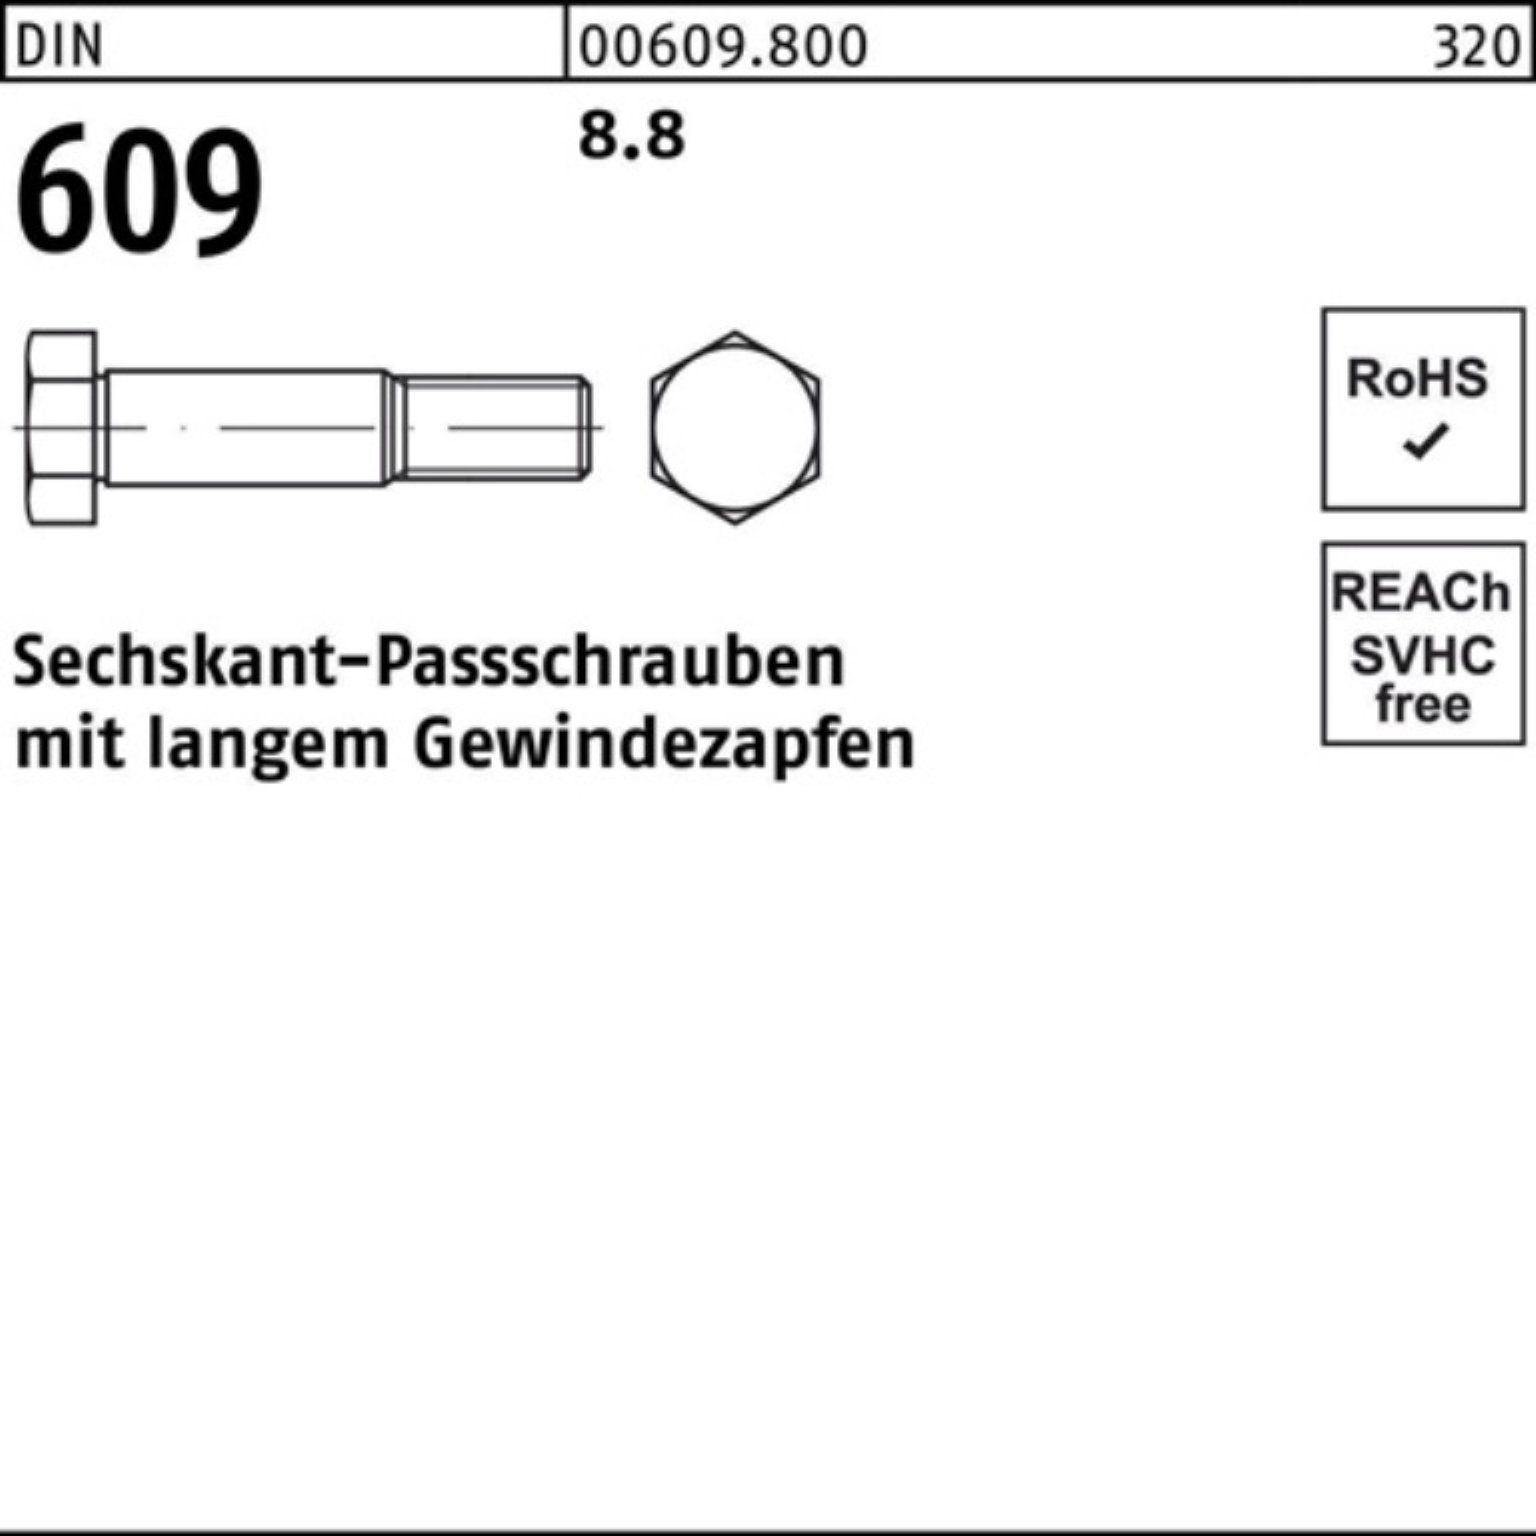 100er Reyher M12x 100 Schraube DIN 609 Pack Sechskantpassschraube langem Gewindezapfen